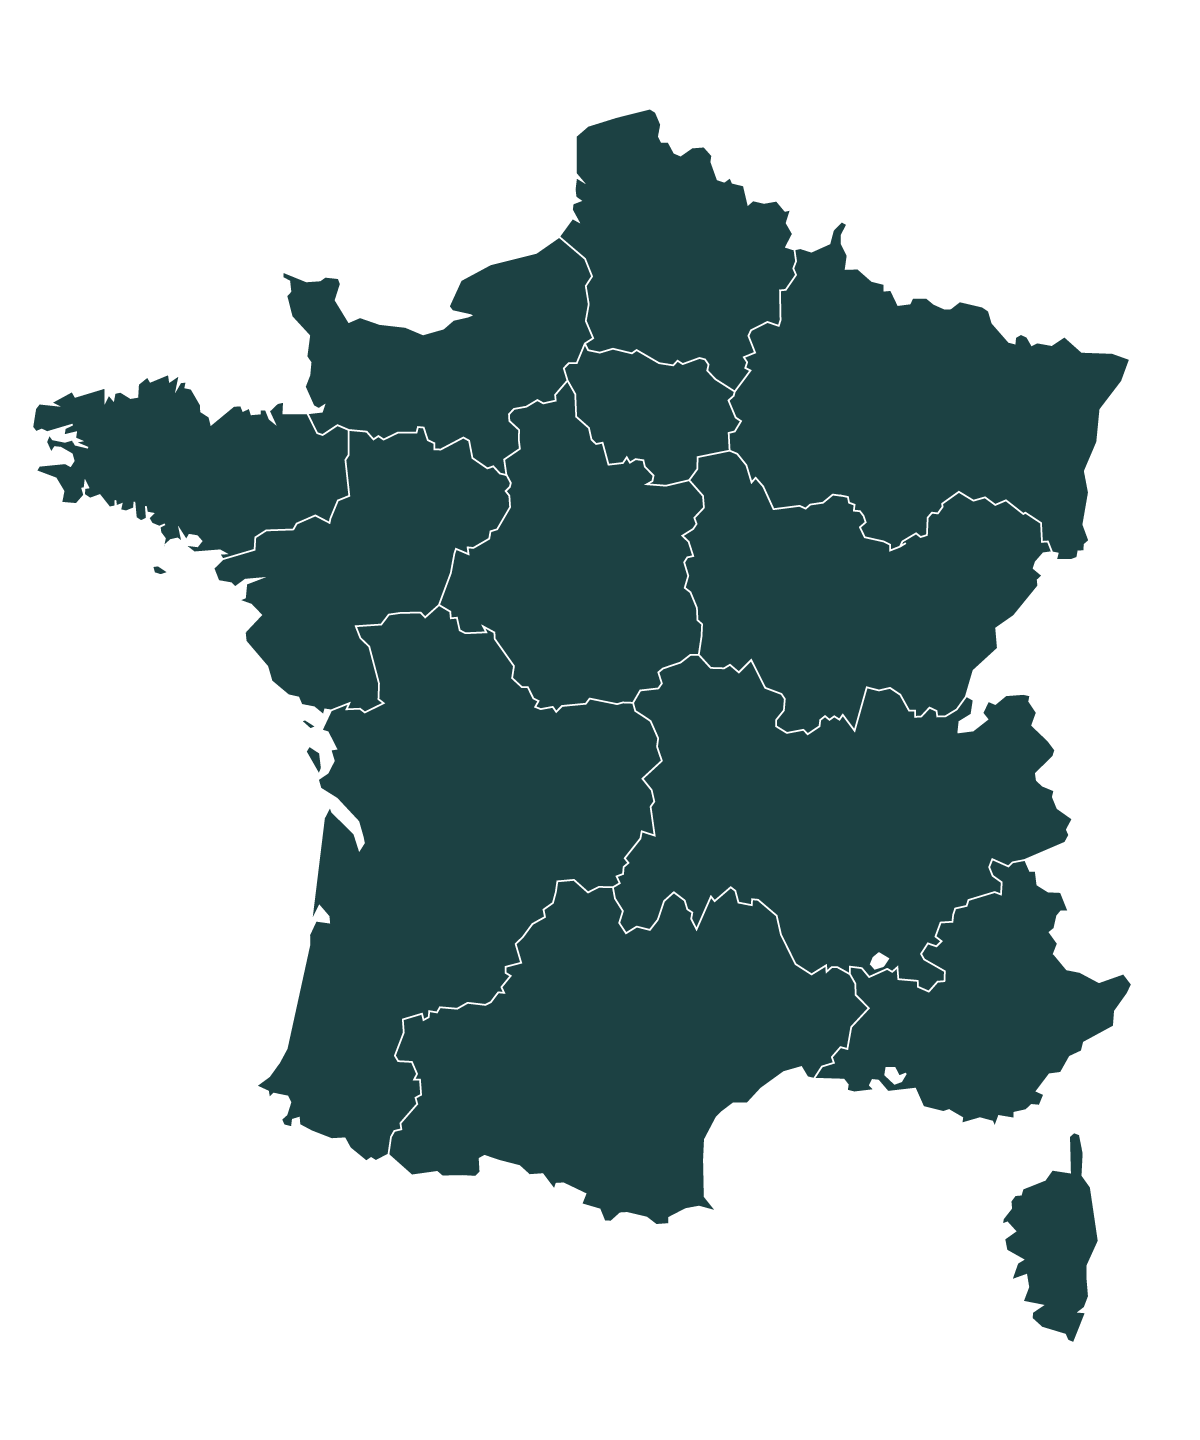 Une carte géographique de la France